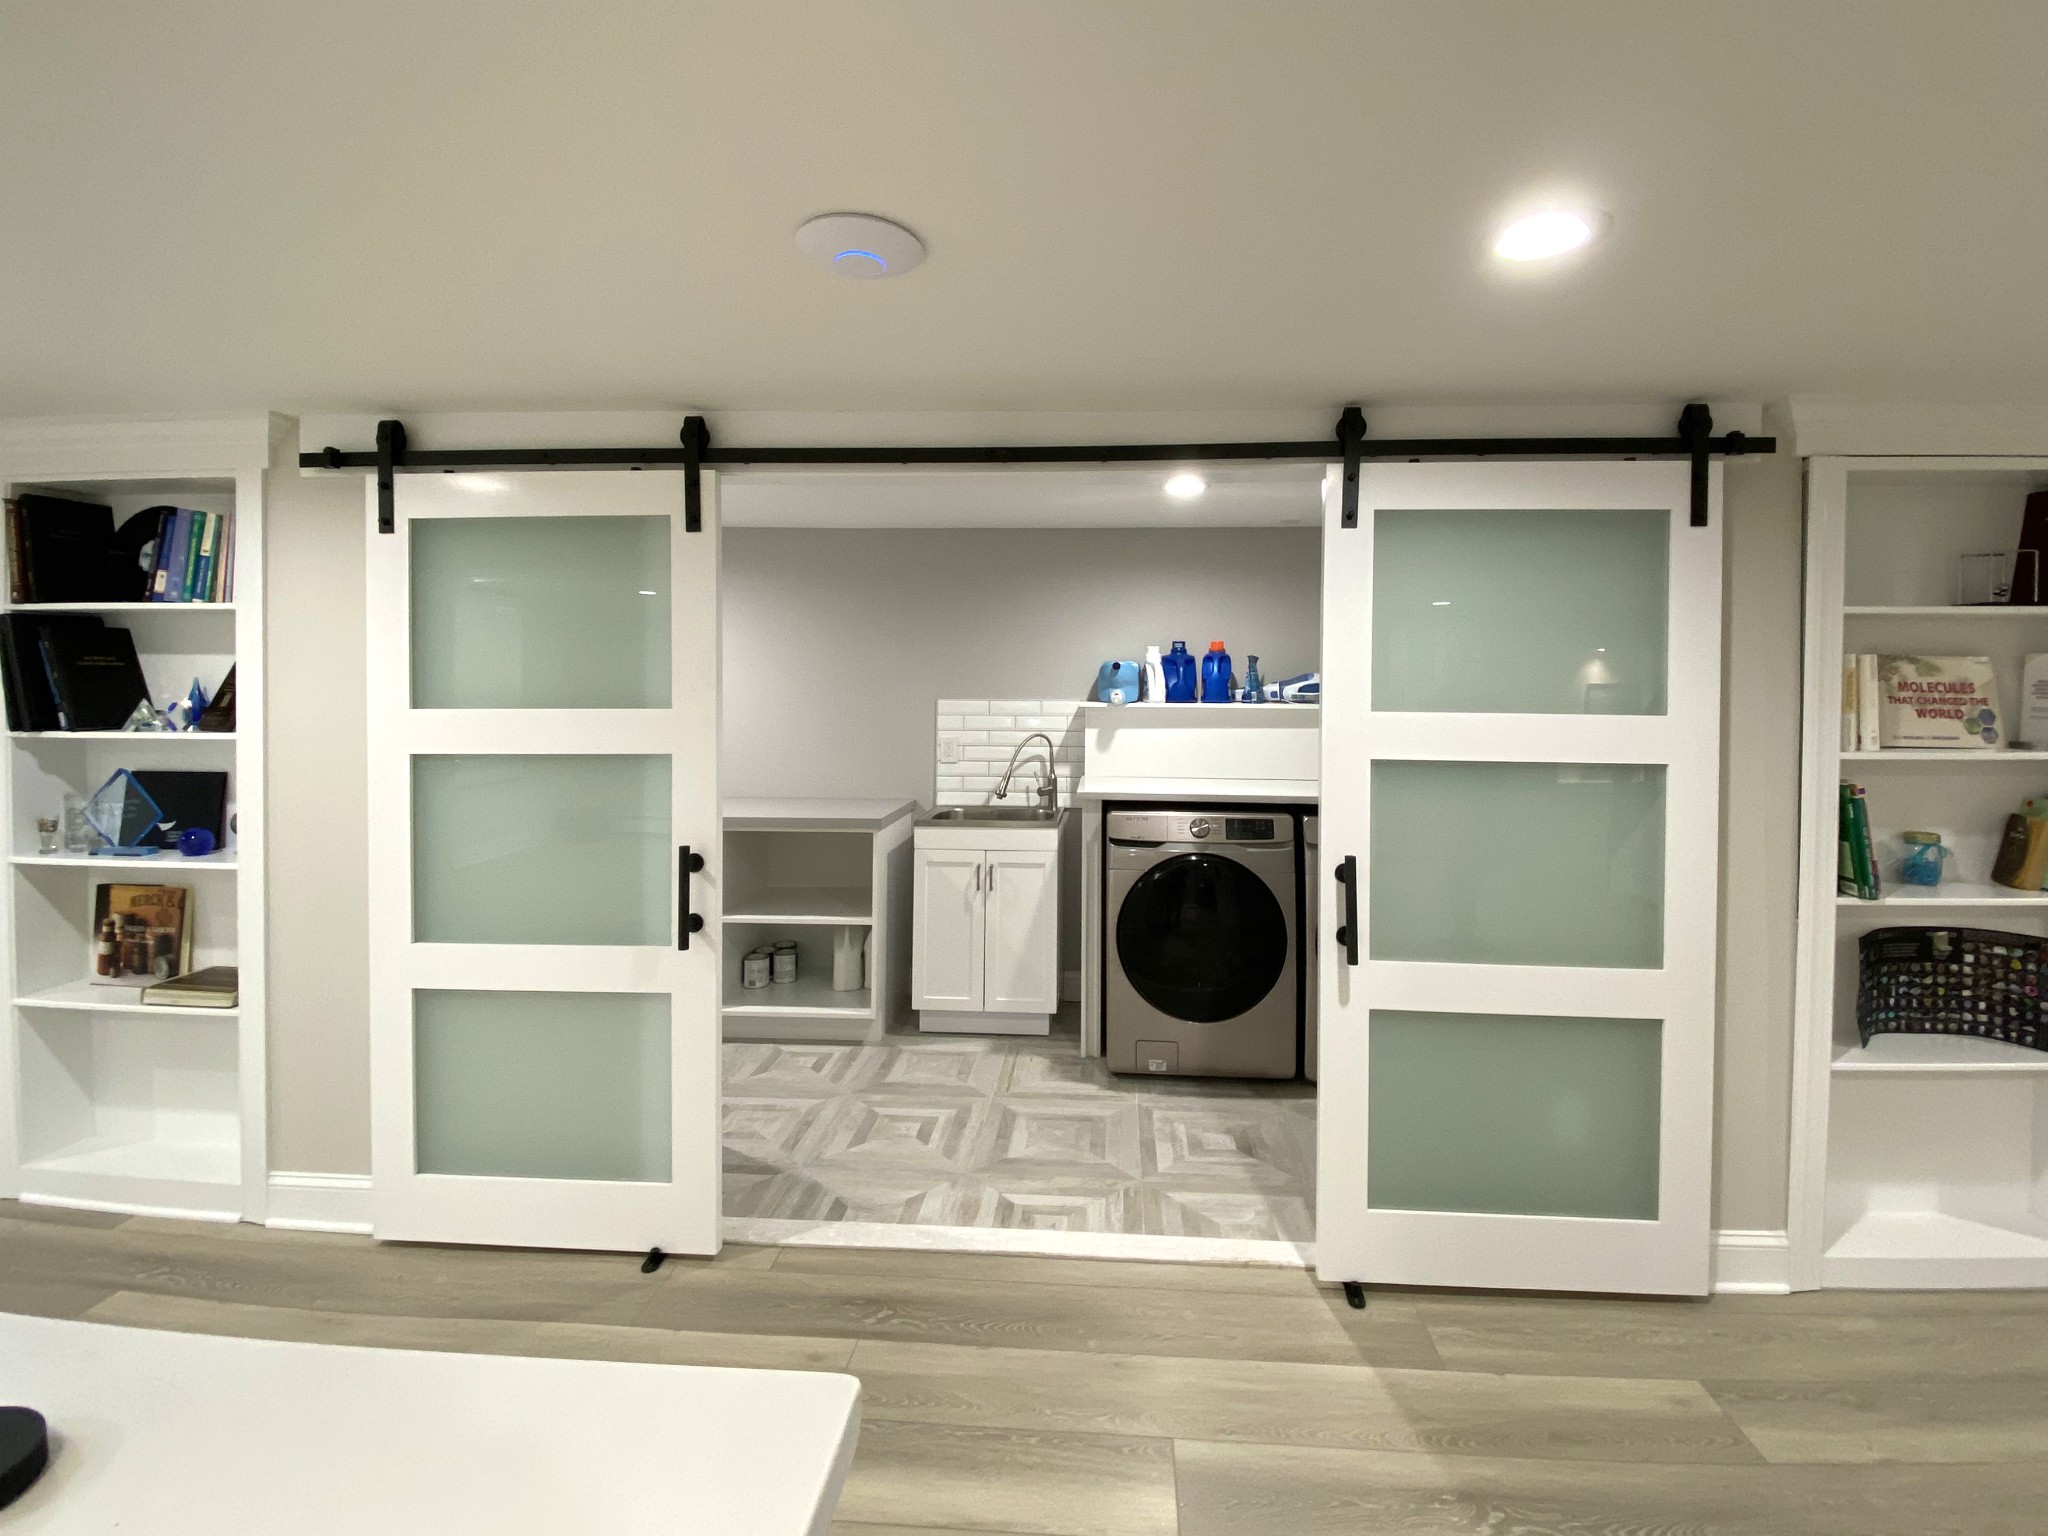 Laundry Room - Finished Basements NJ